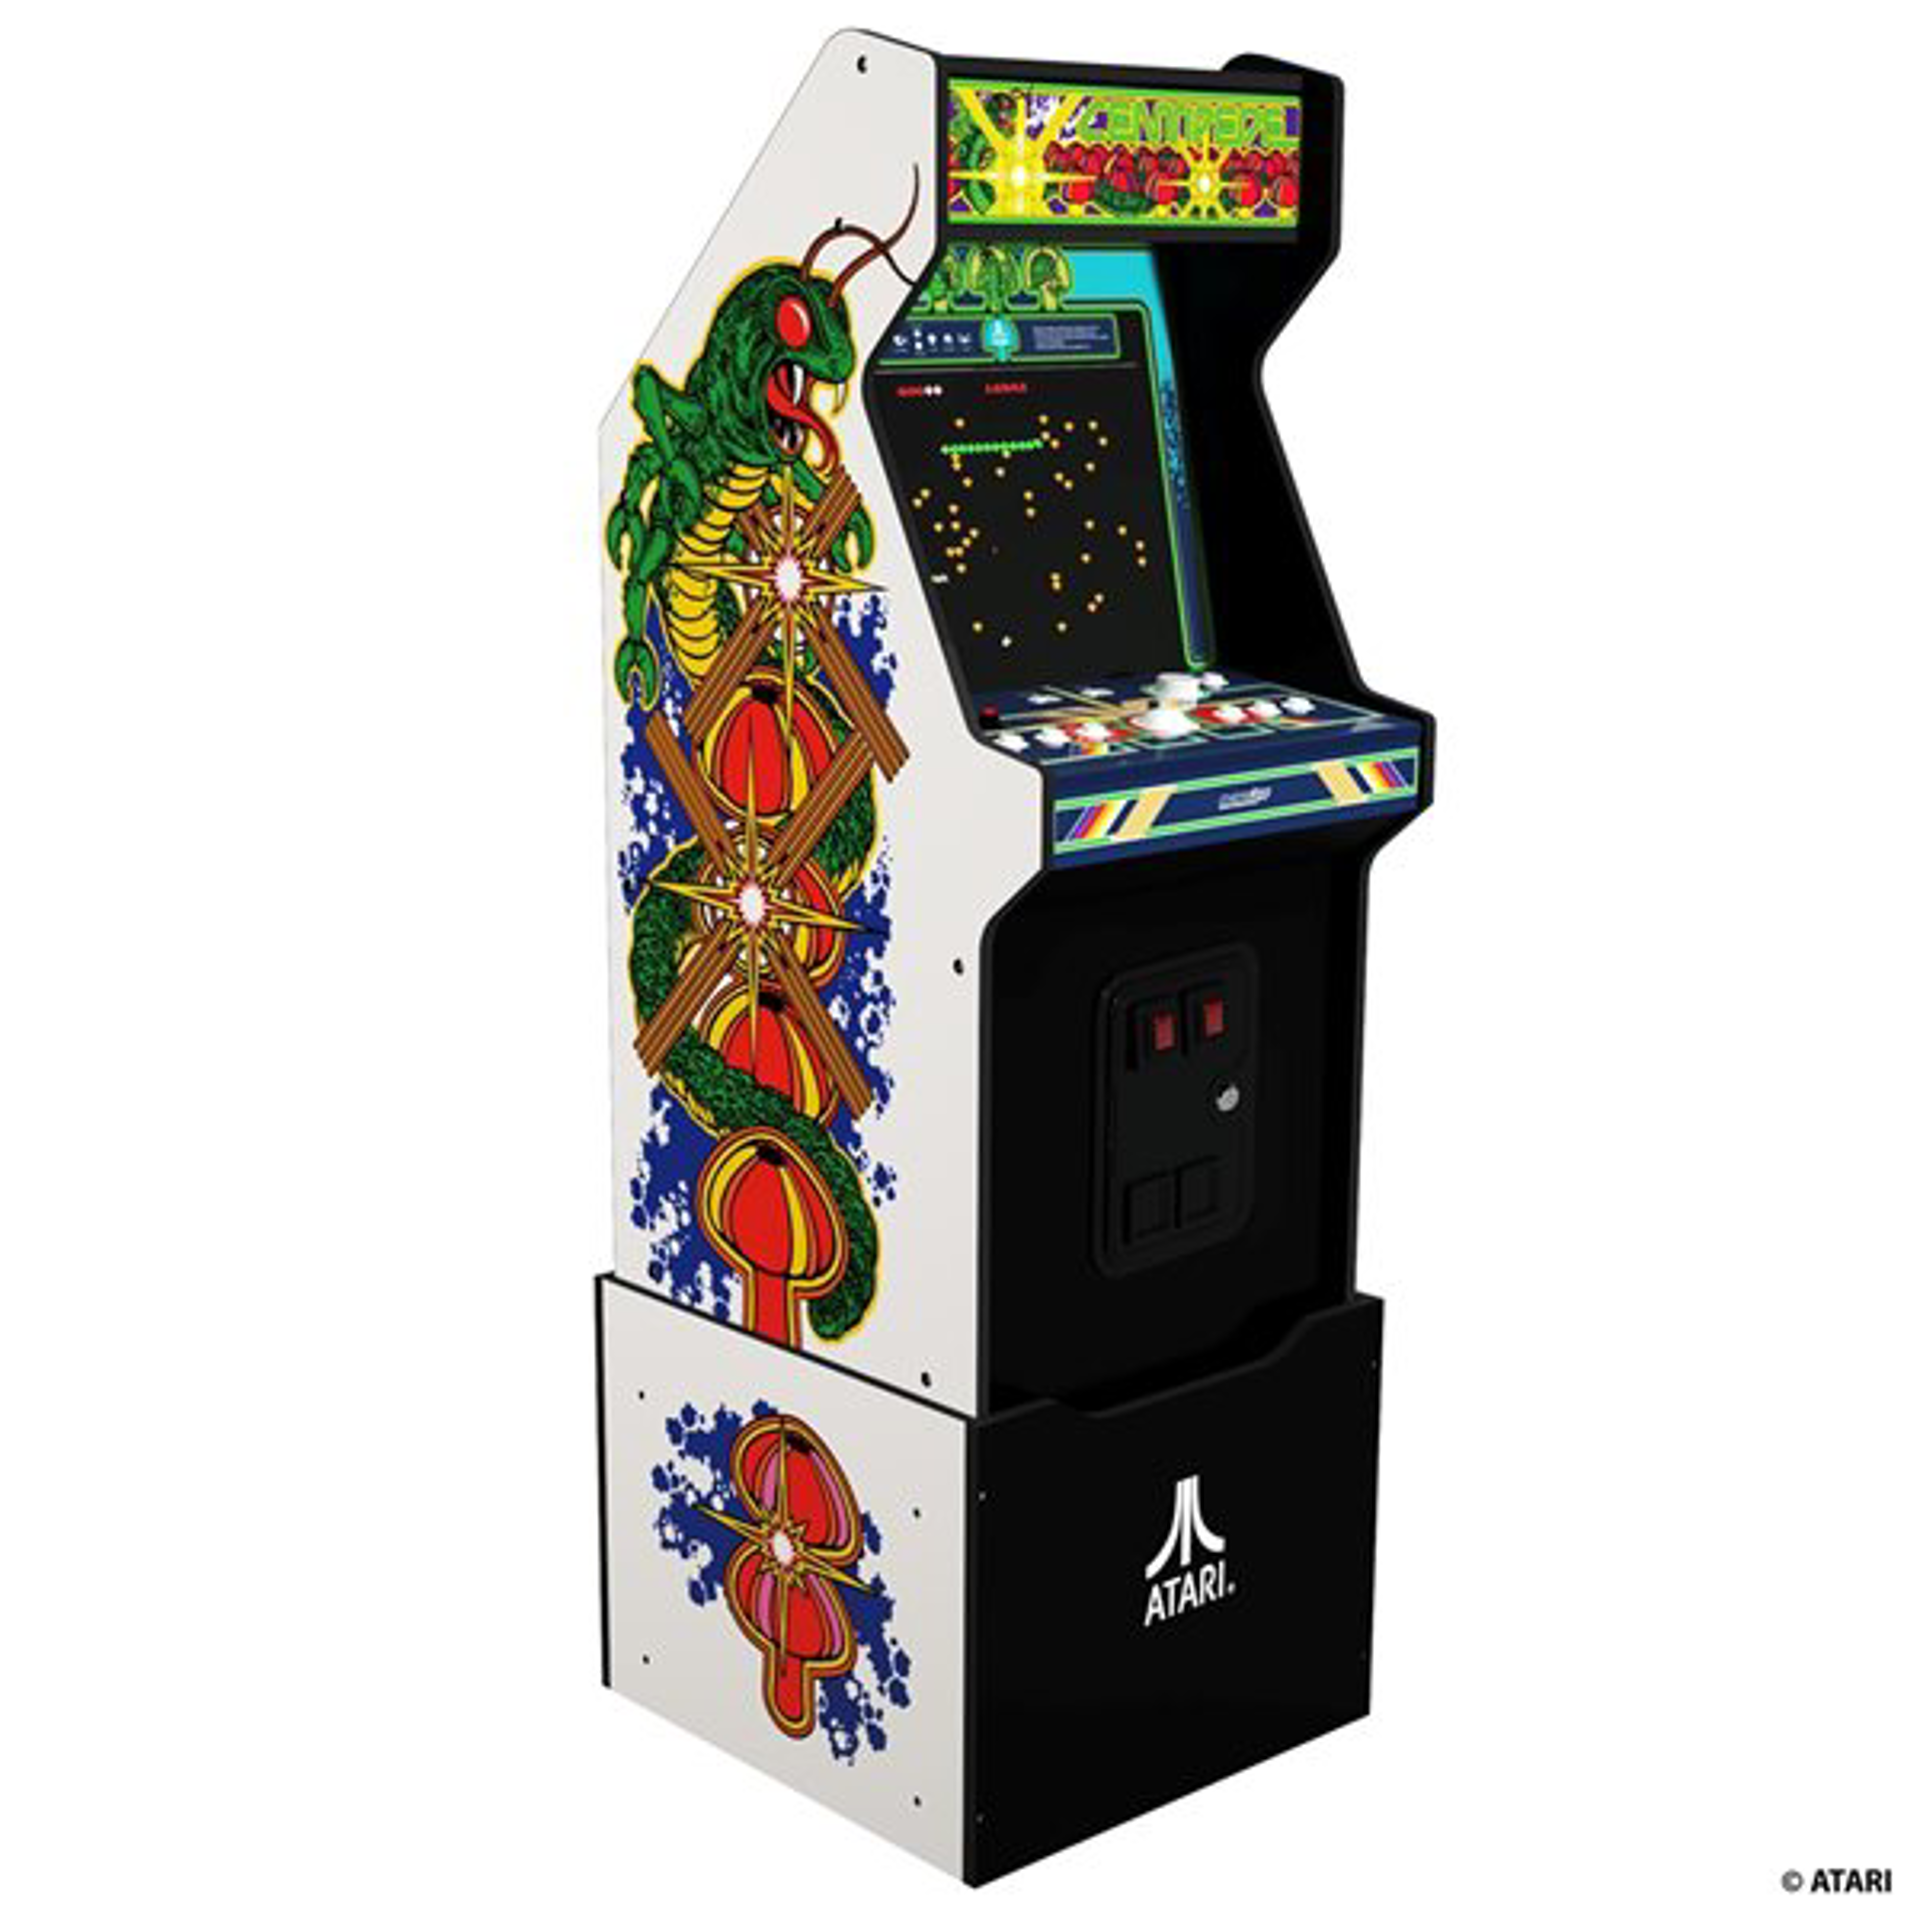 Arcade1Up - Atari Legacy 14-en-1 Centipede Edition Arcade Machine